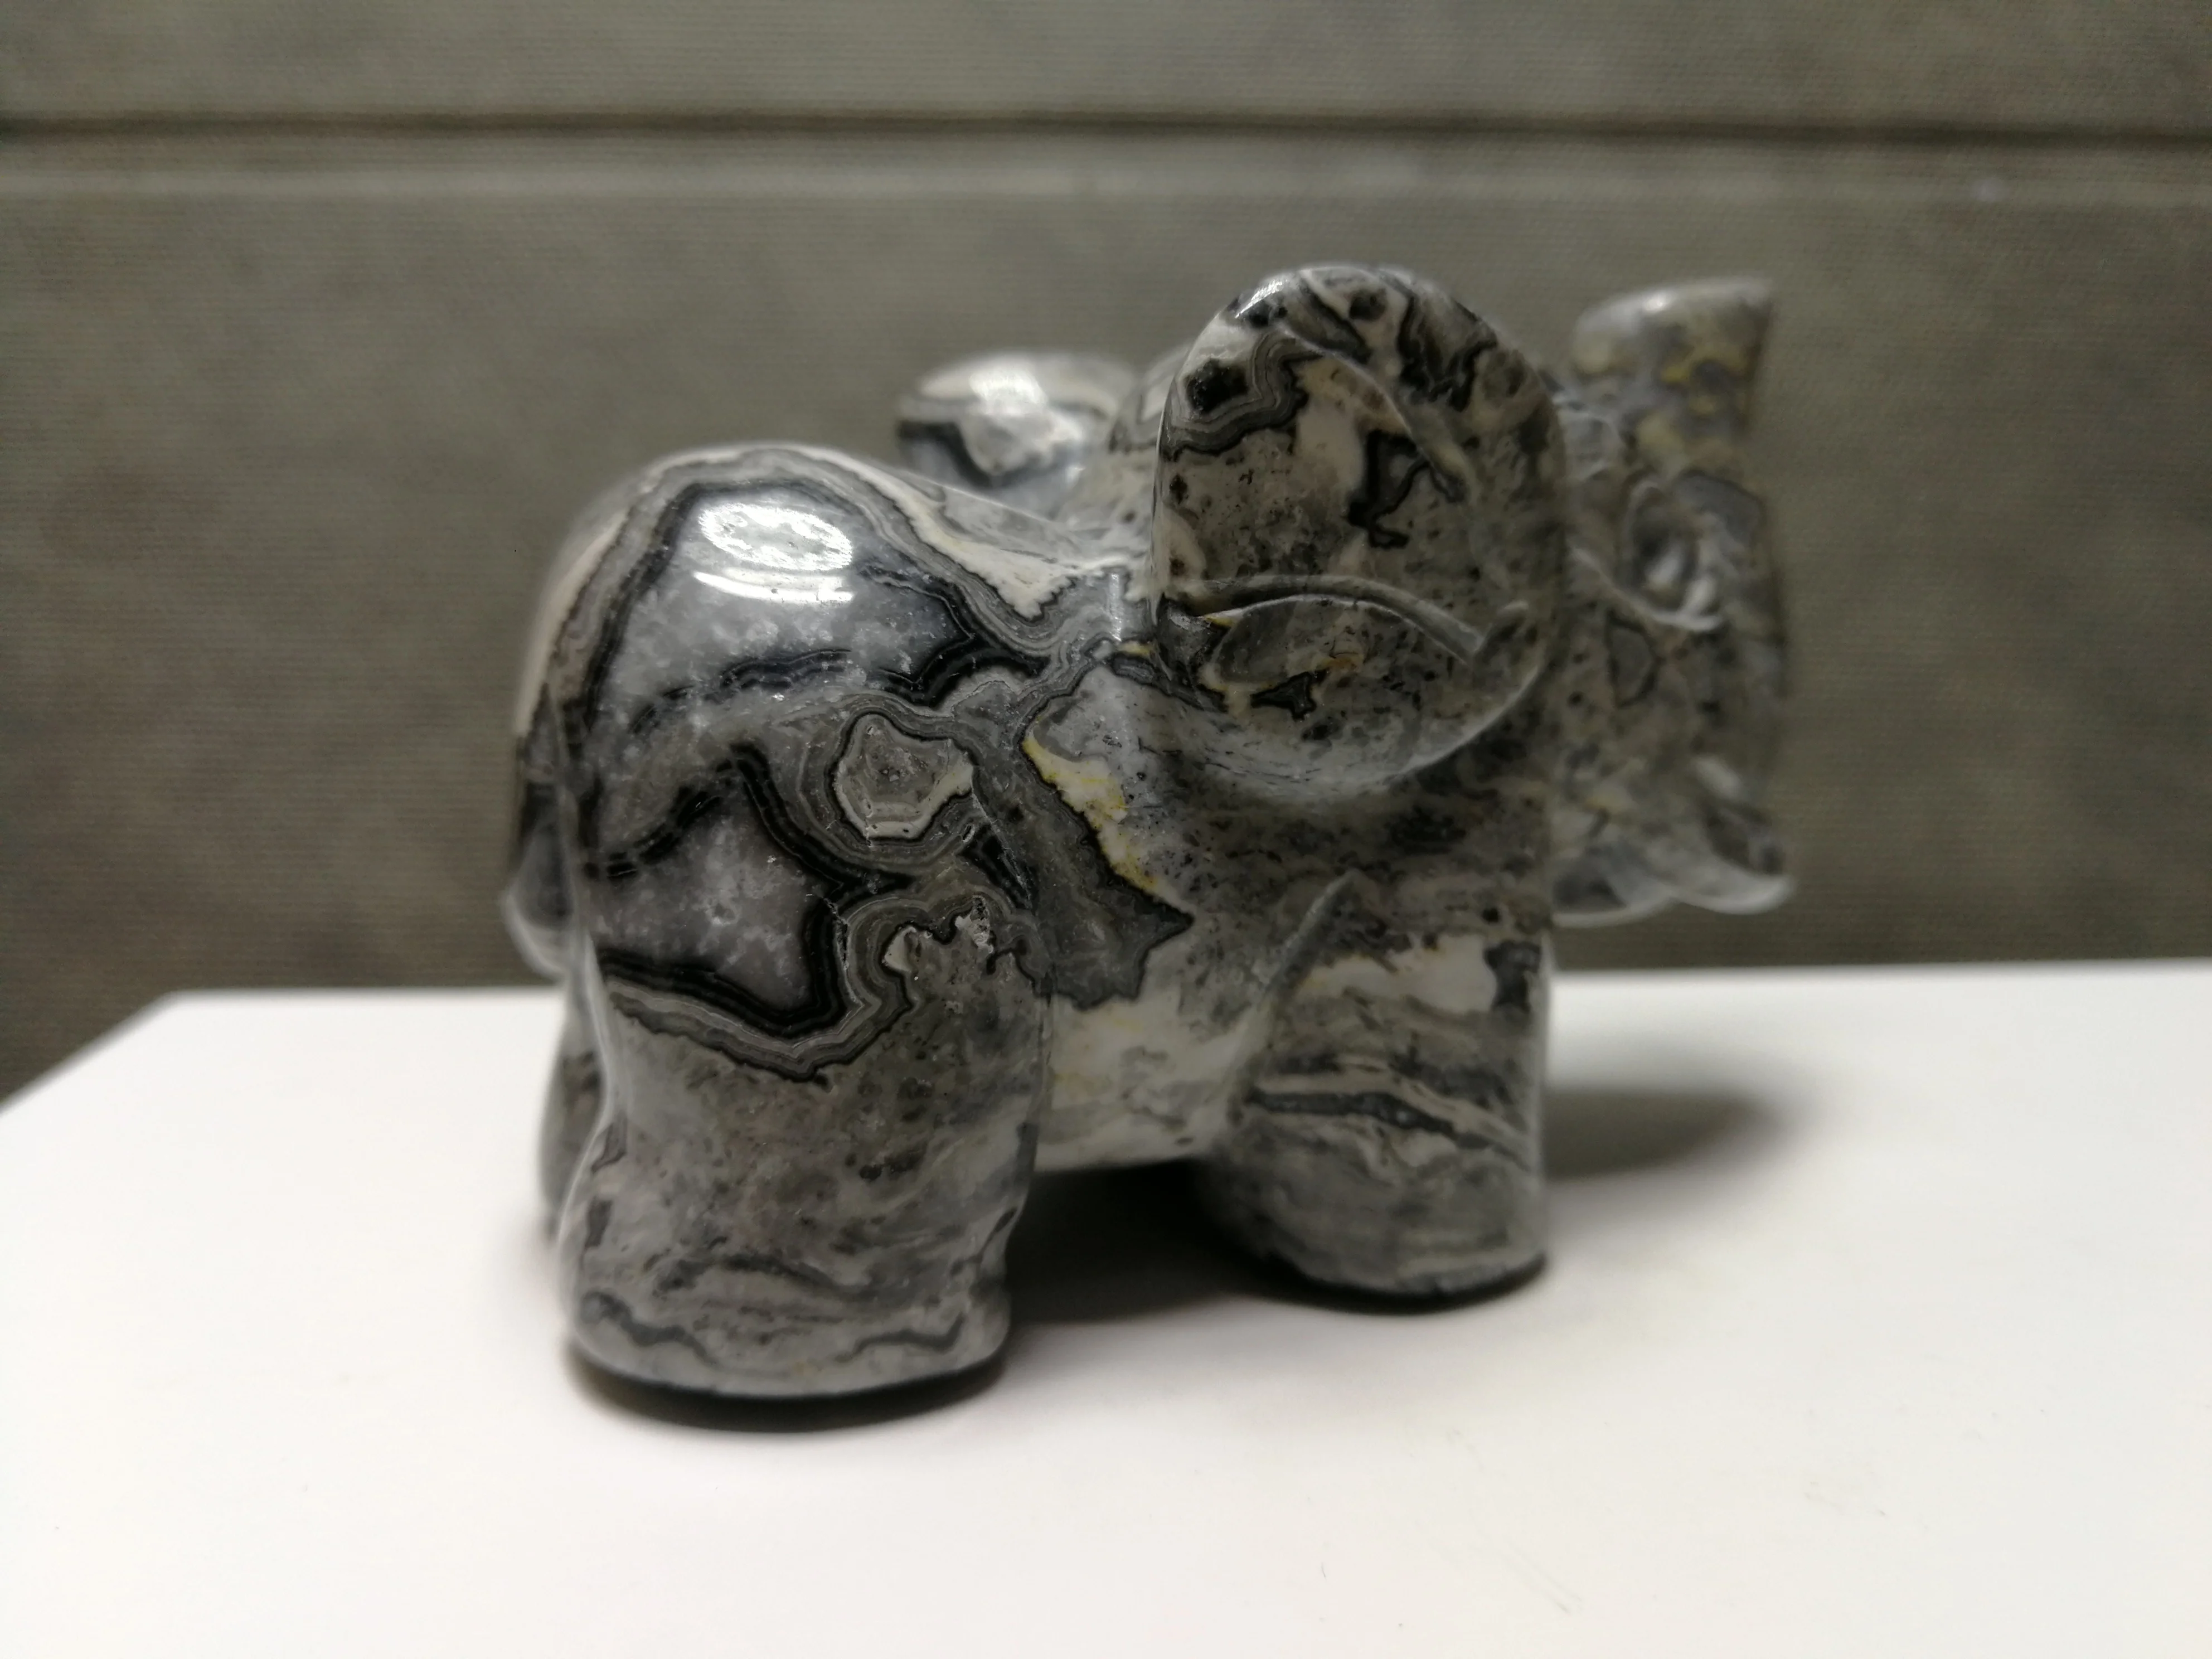 219,2 gNatural серый камень "Зебра", выгравированный вручную слонов, исцеление --- подача заявки на 10 от AliExpress WW